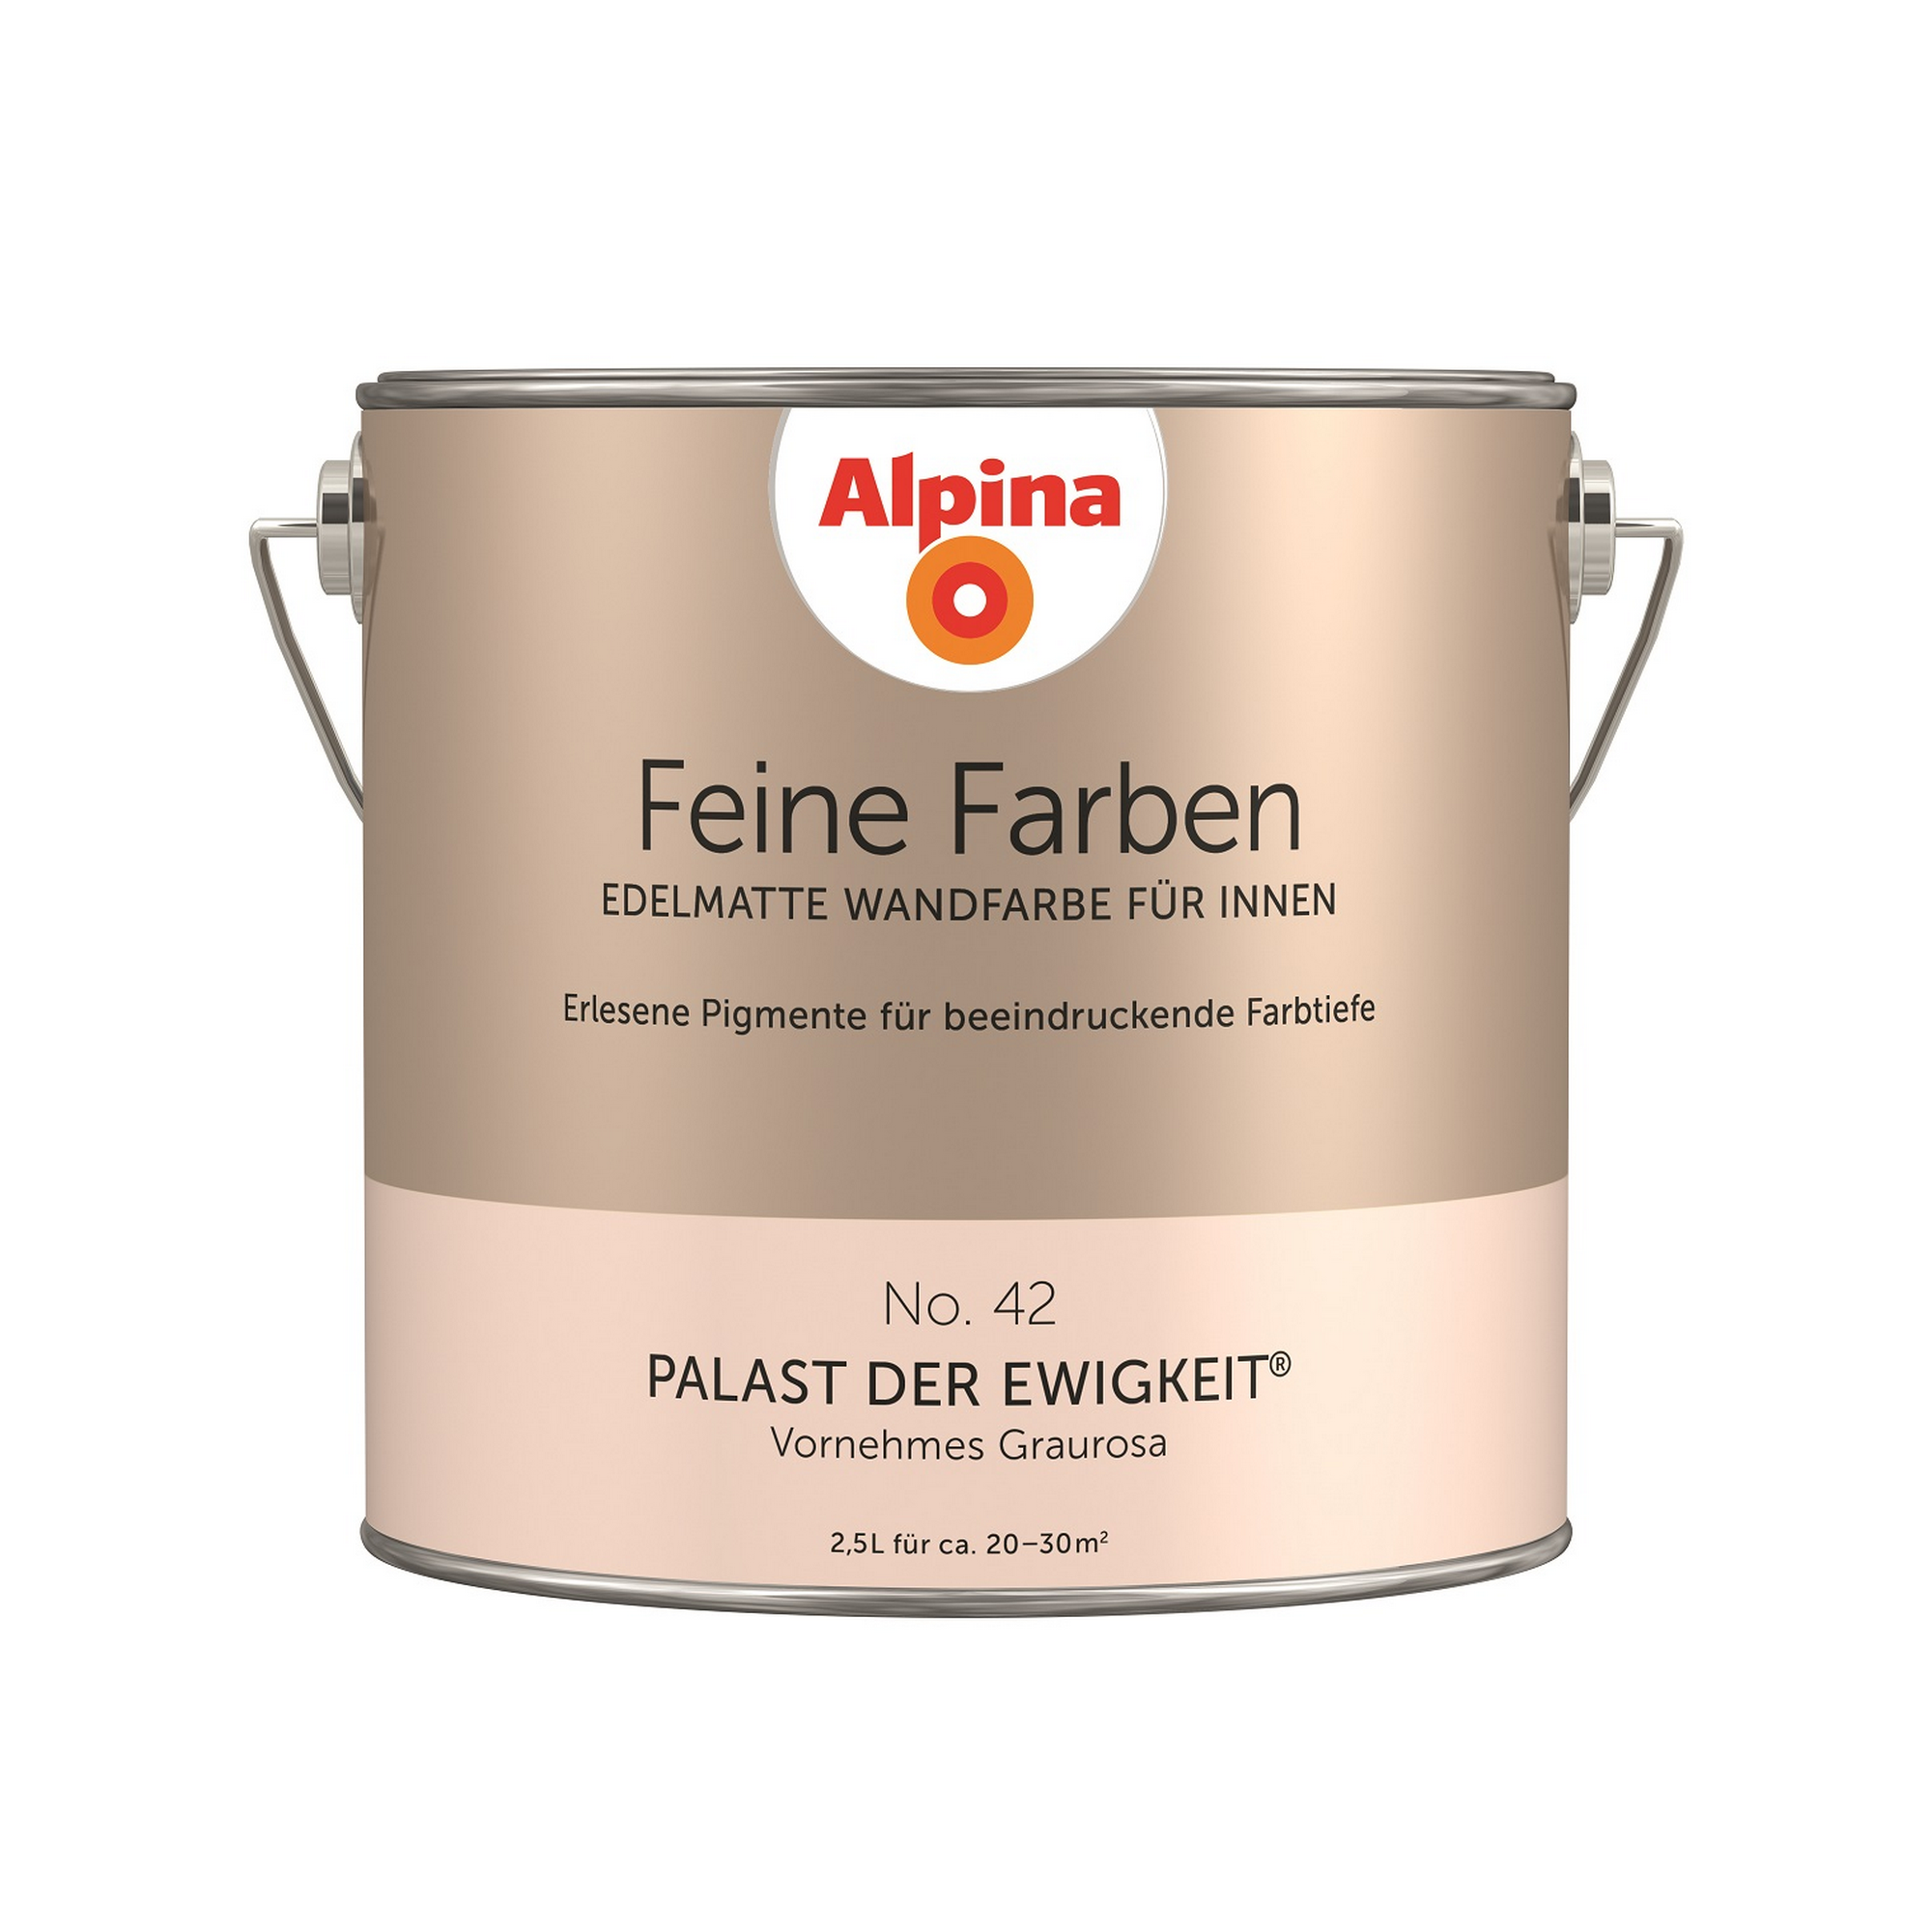 Feine Farben 'Palast der Ewigkeit' cremebeige seidenmatt 2,5 l + product picture